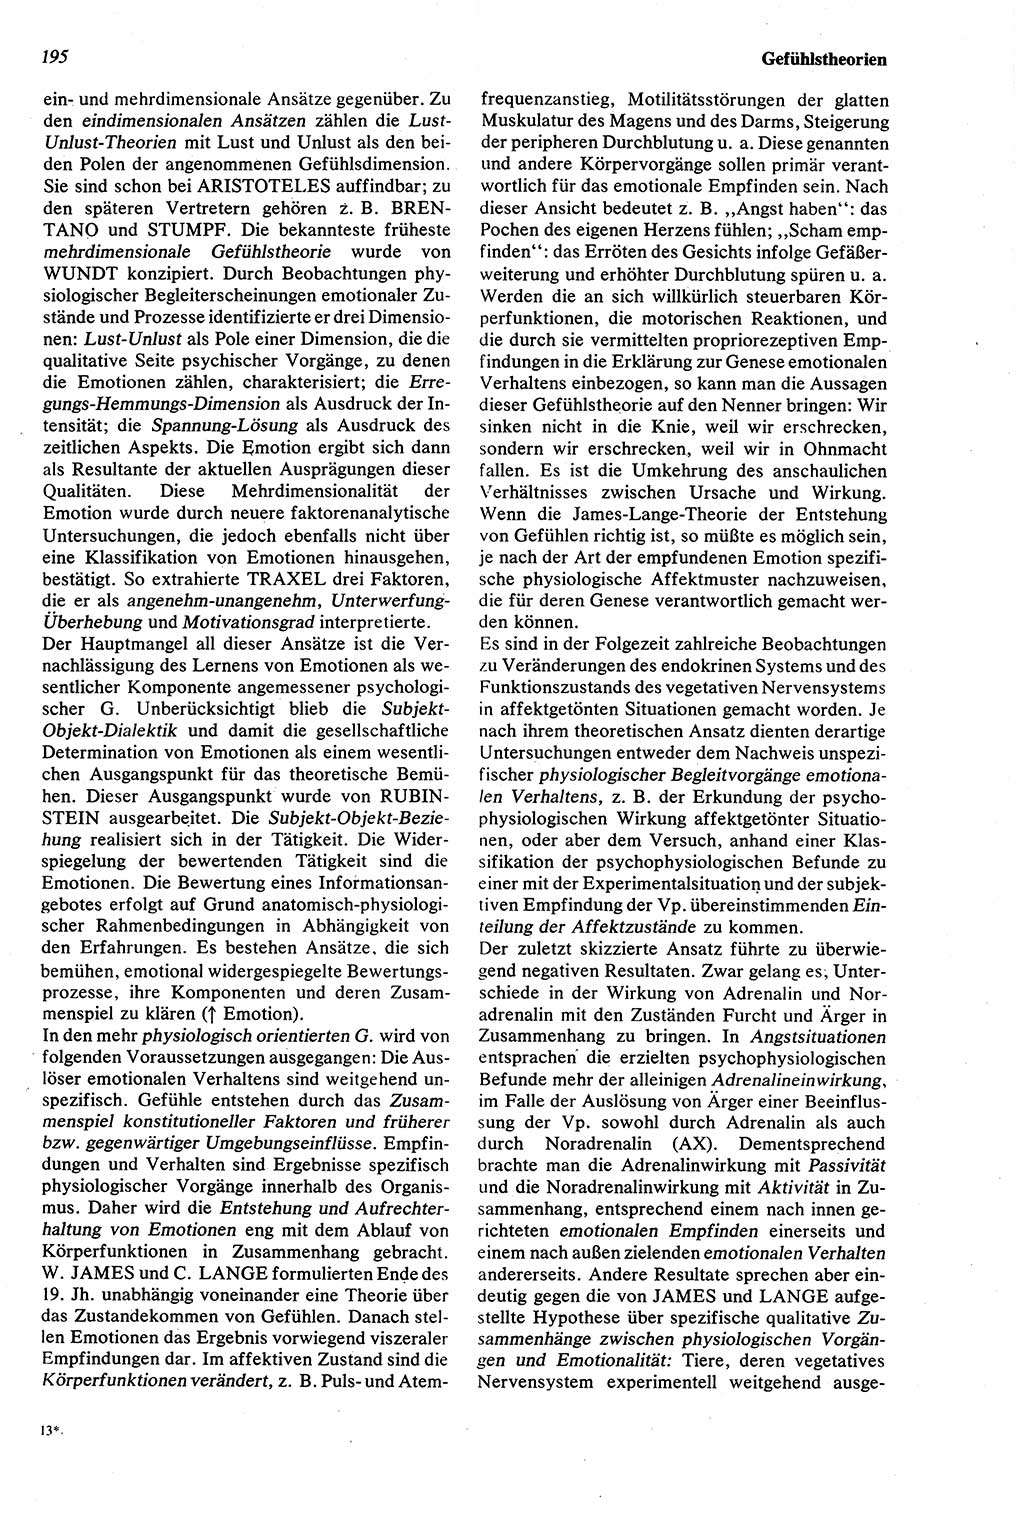 Wörterbuch der Psychologie [Deutsche Demokratische Republik (DDR)] 1976, Seite 195 (Wb. Psych. DDR 1976, S. 195)